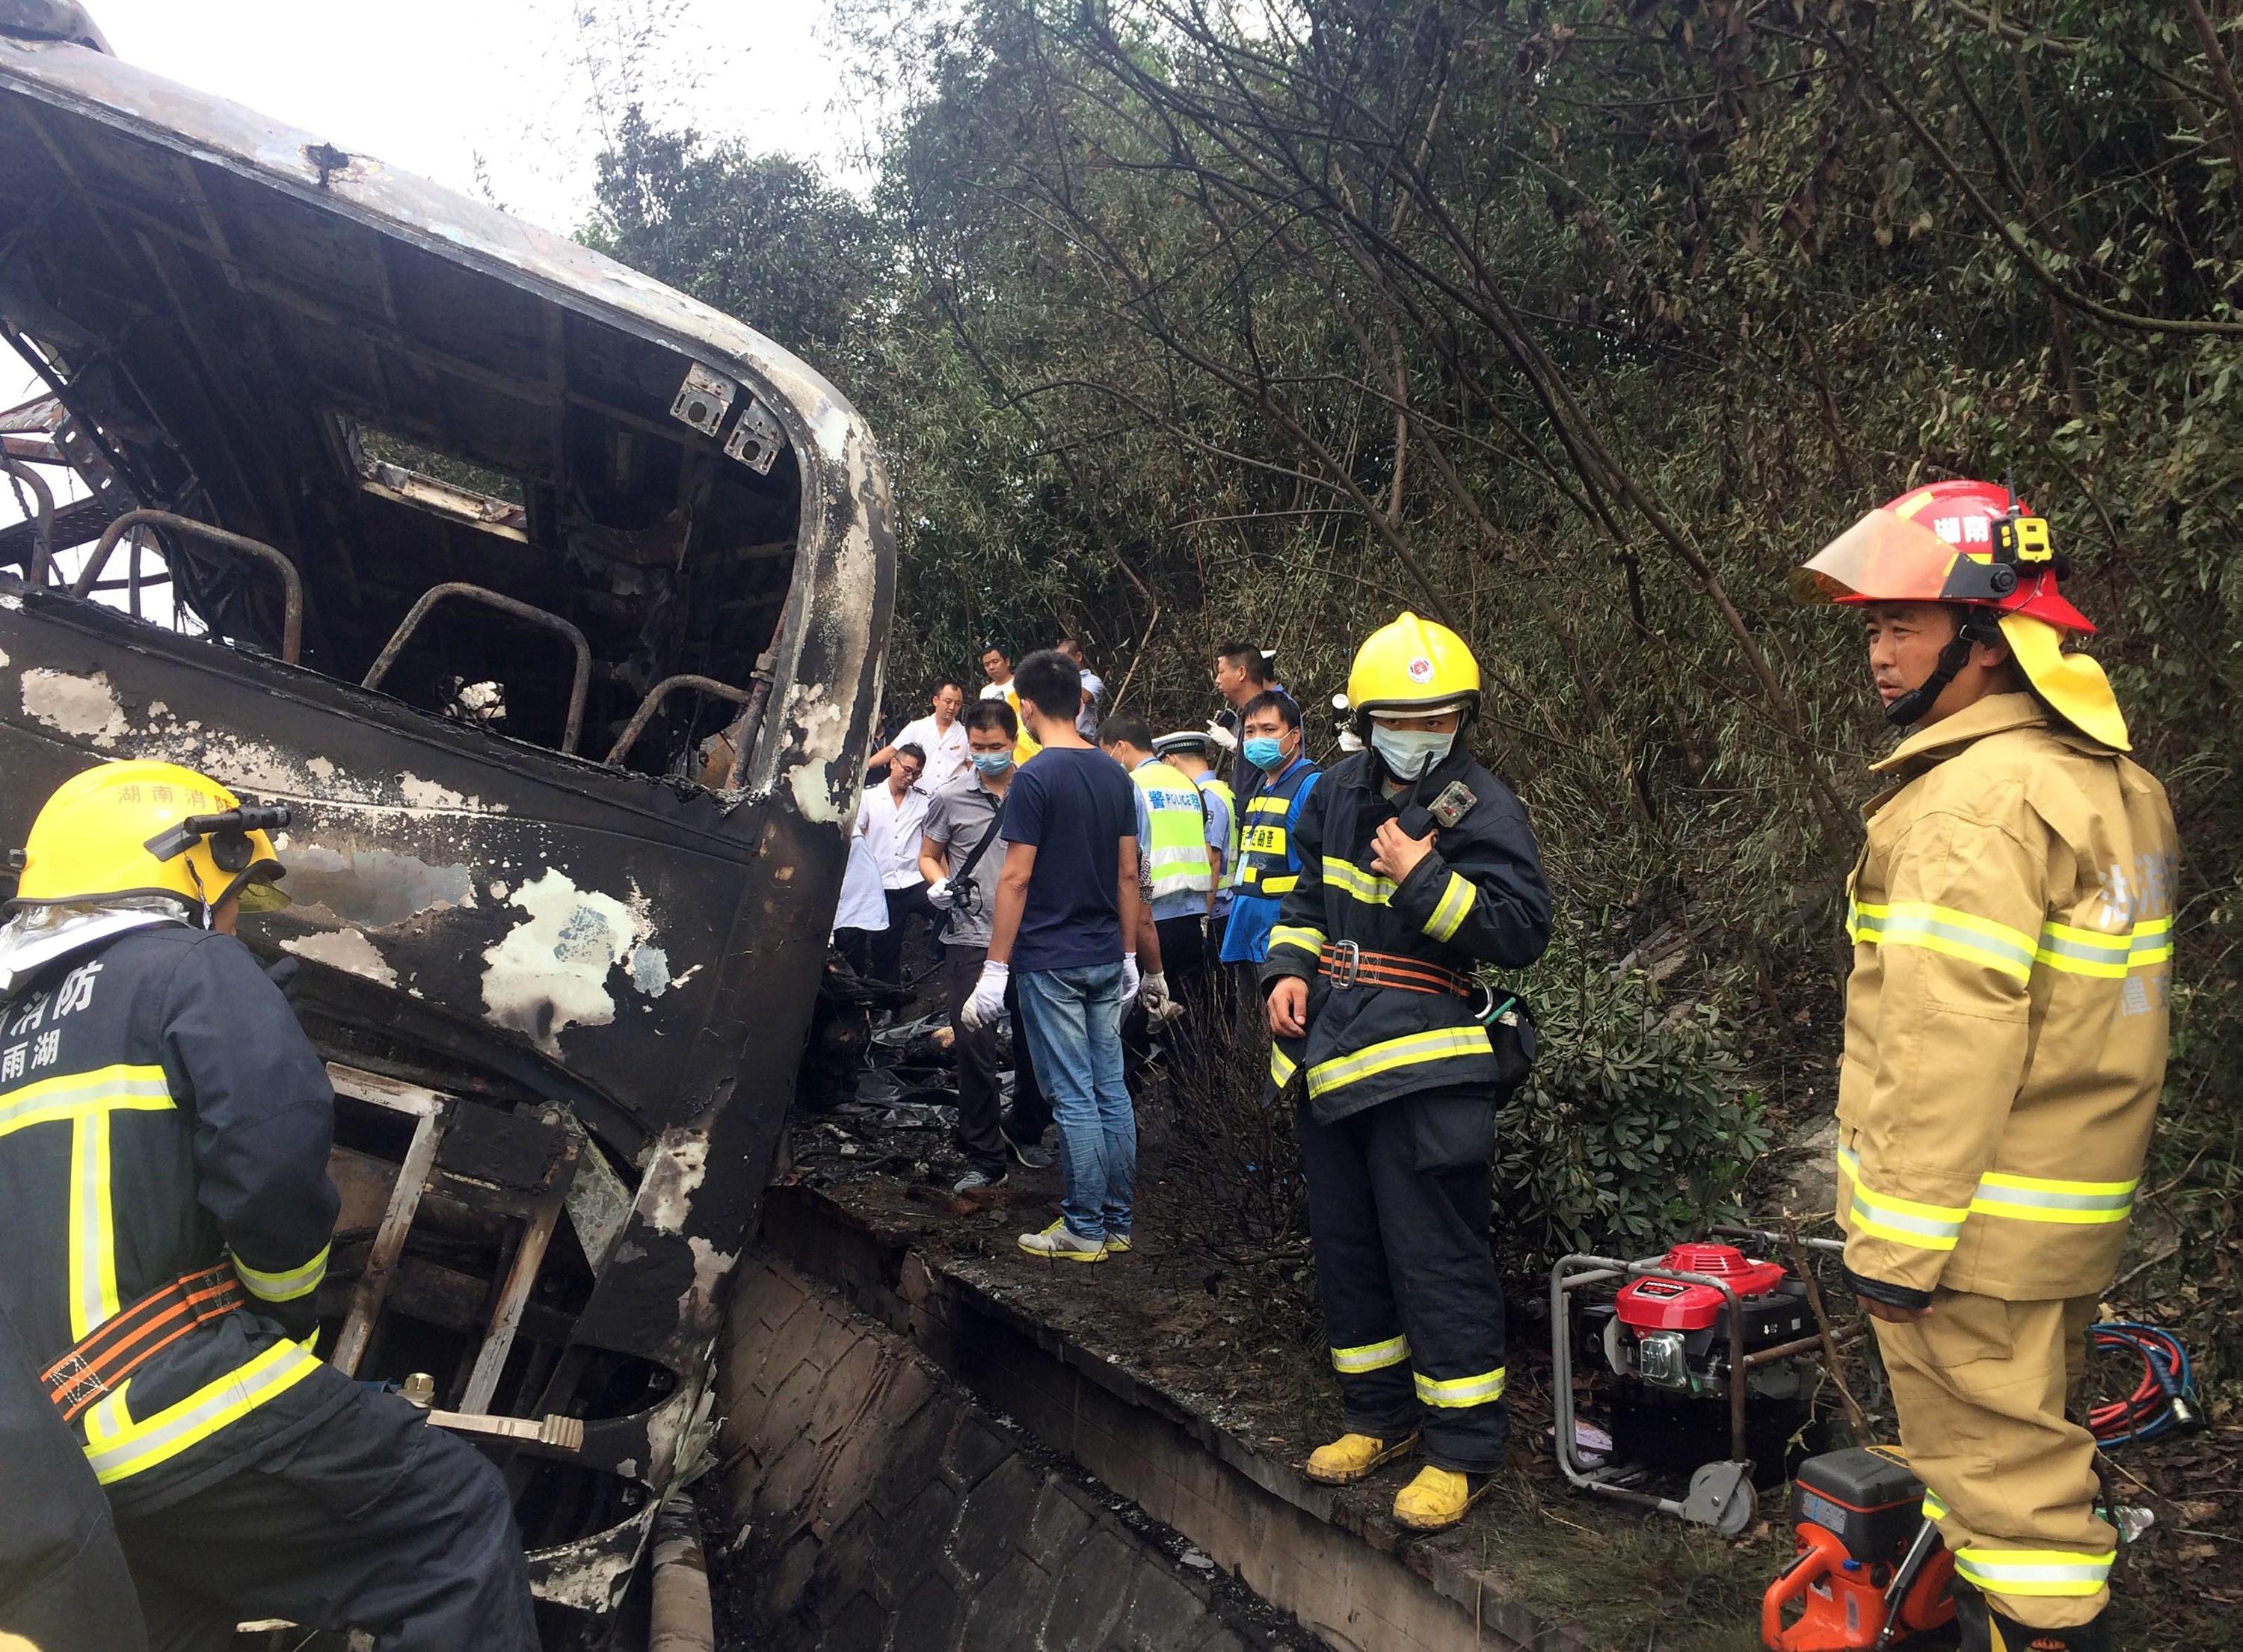 Räddningspersonal vid en olycka med en buss och lastbil. 22 personer omkom den 25 september 2015, Xiangtan Kina. (Foto: STR/AFP/Getty Images)